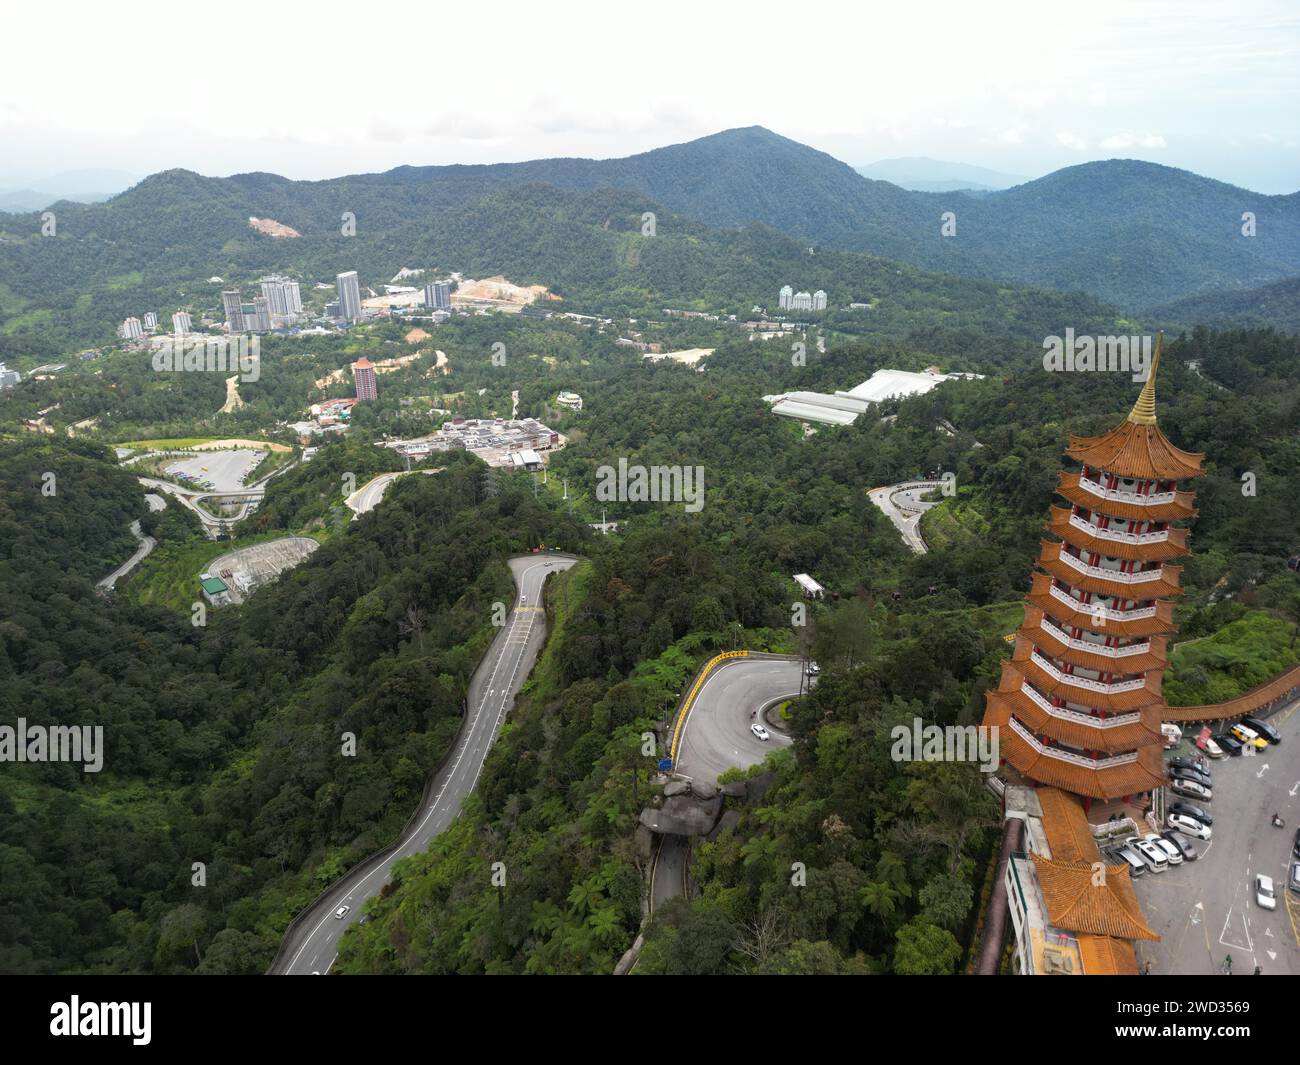 Une vue aérienne du temple Chin Swee dans la région de Genting Highlands en Malaisie Banque D'Images